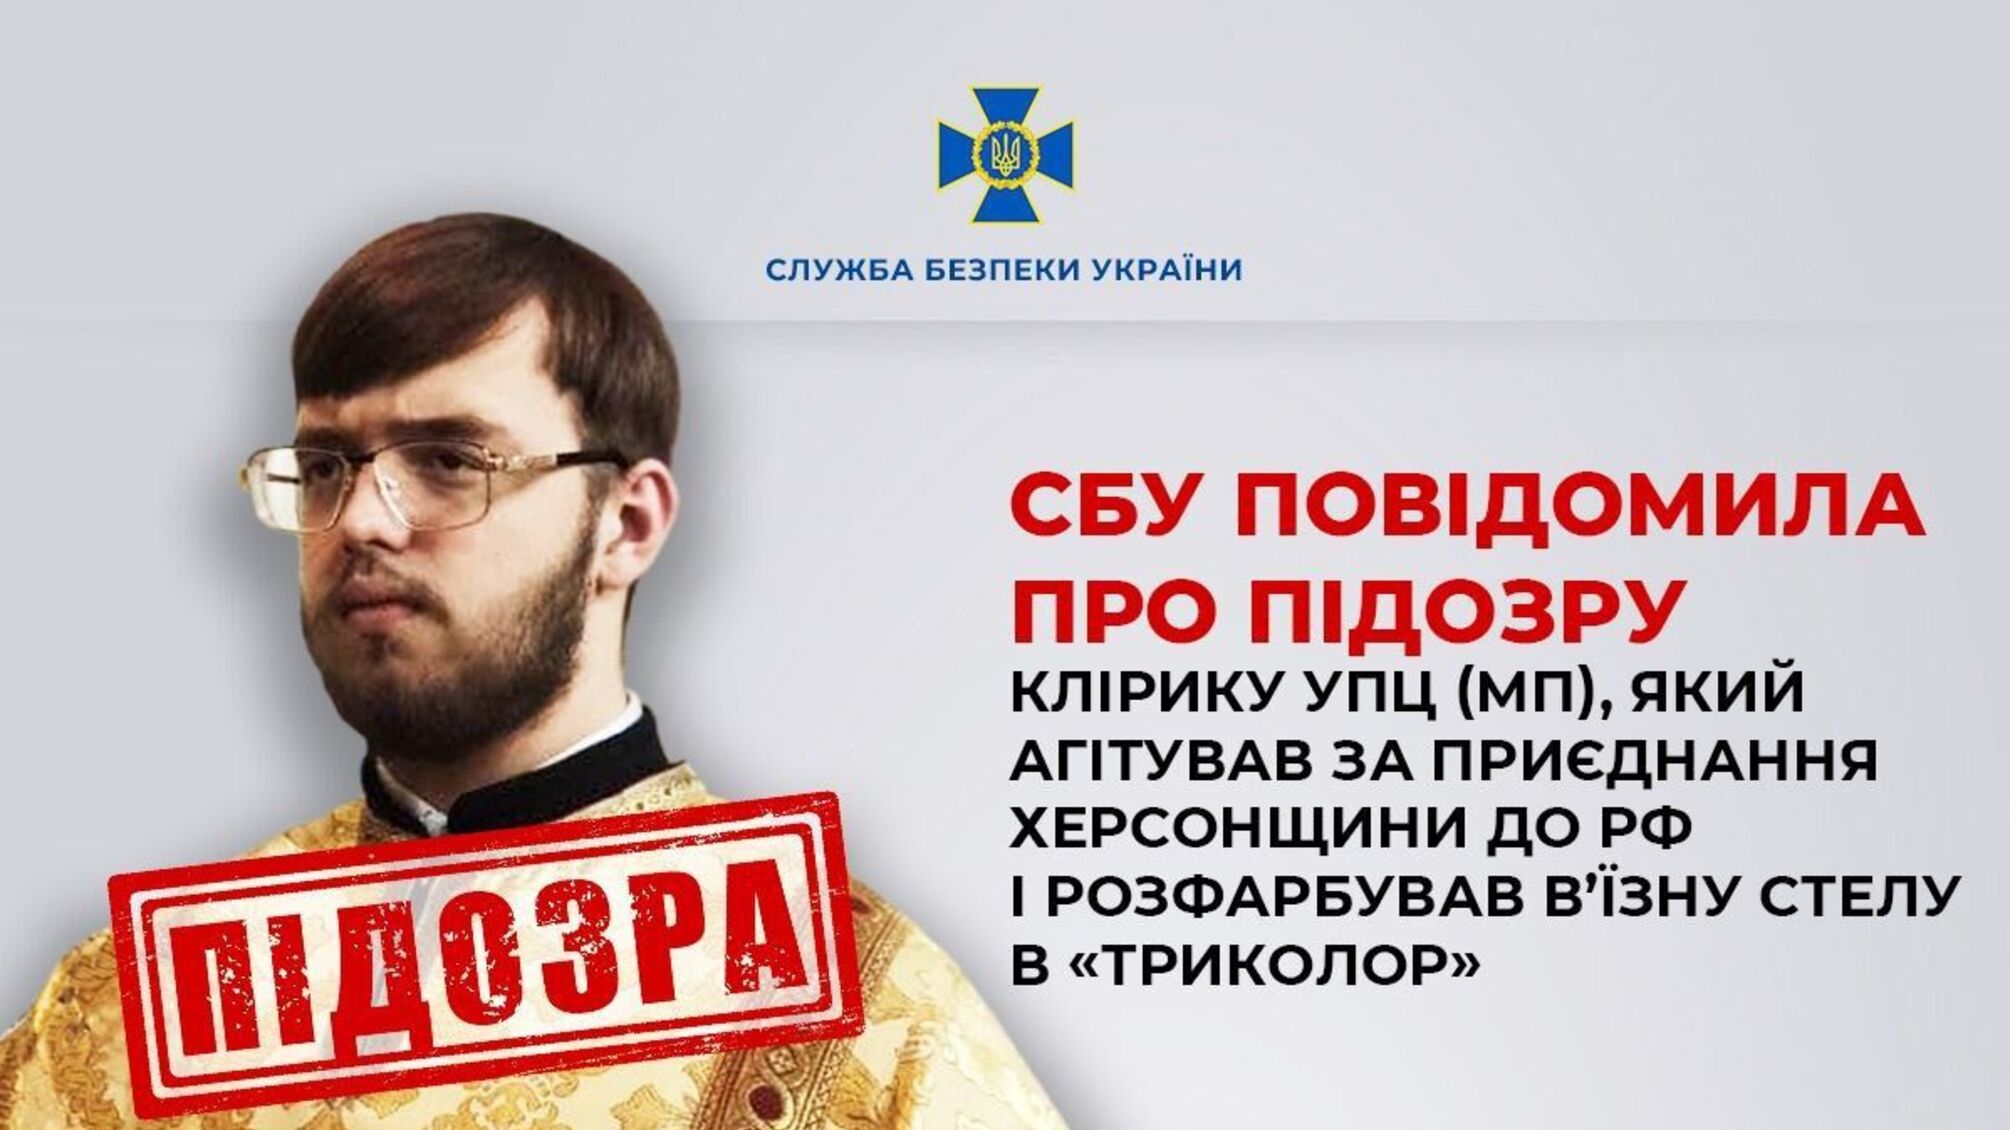 На Херсонщині СБУ оголосила підозру церковному служителю УПЦ(МП) за злочини проти України